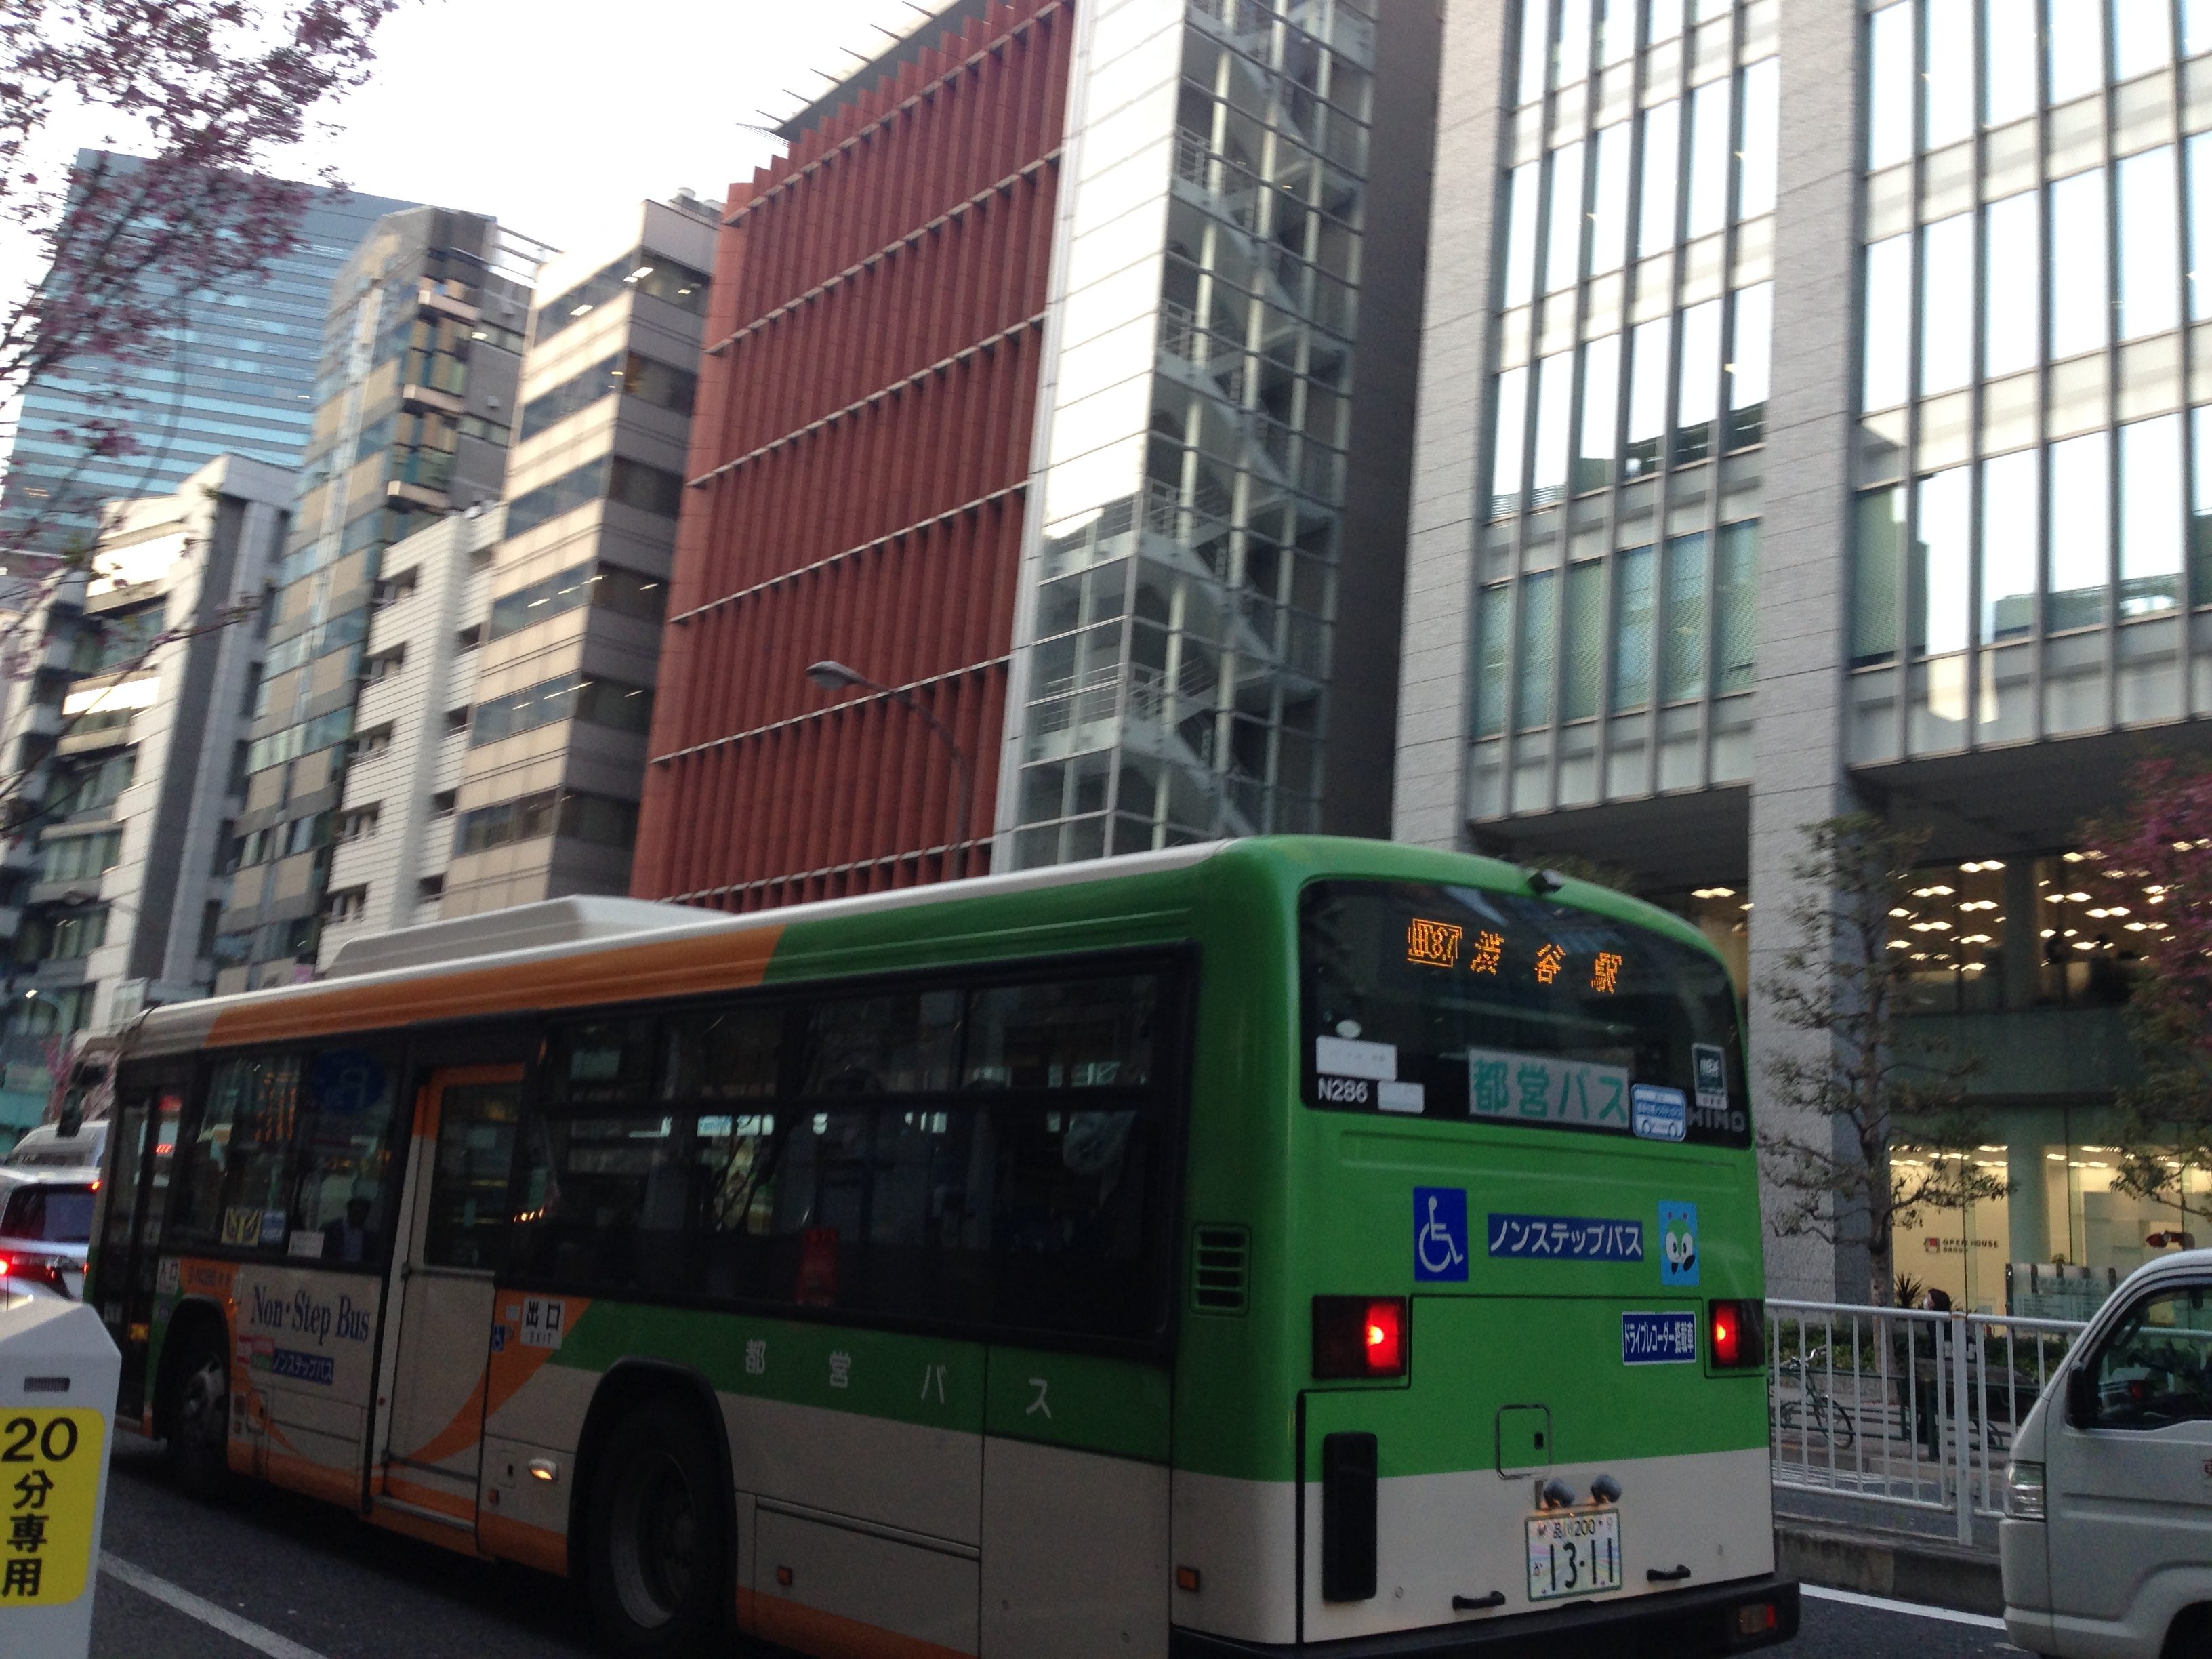 渋谷へ向かう都営バス